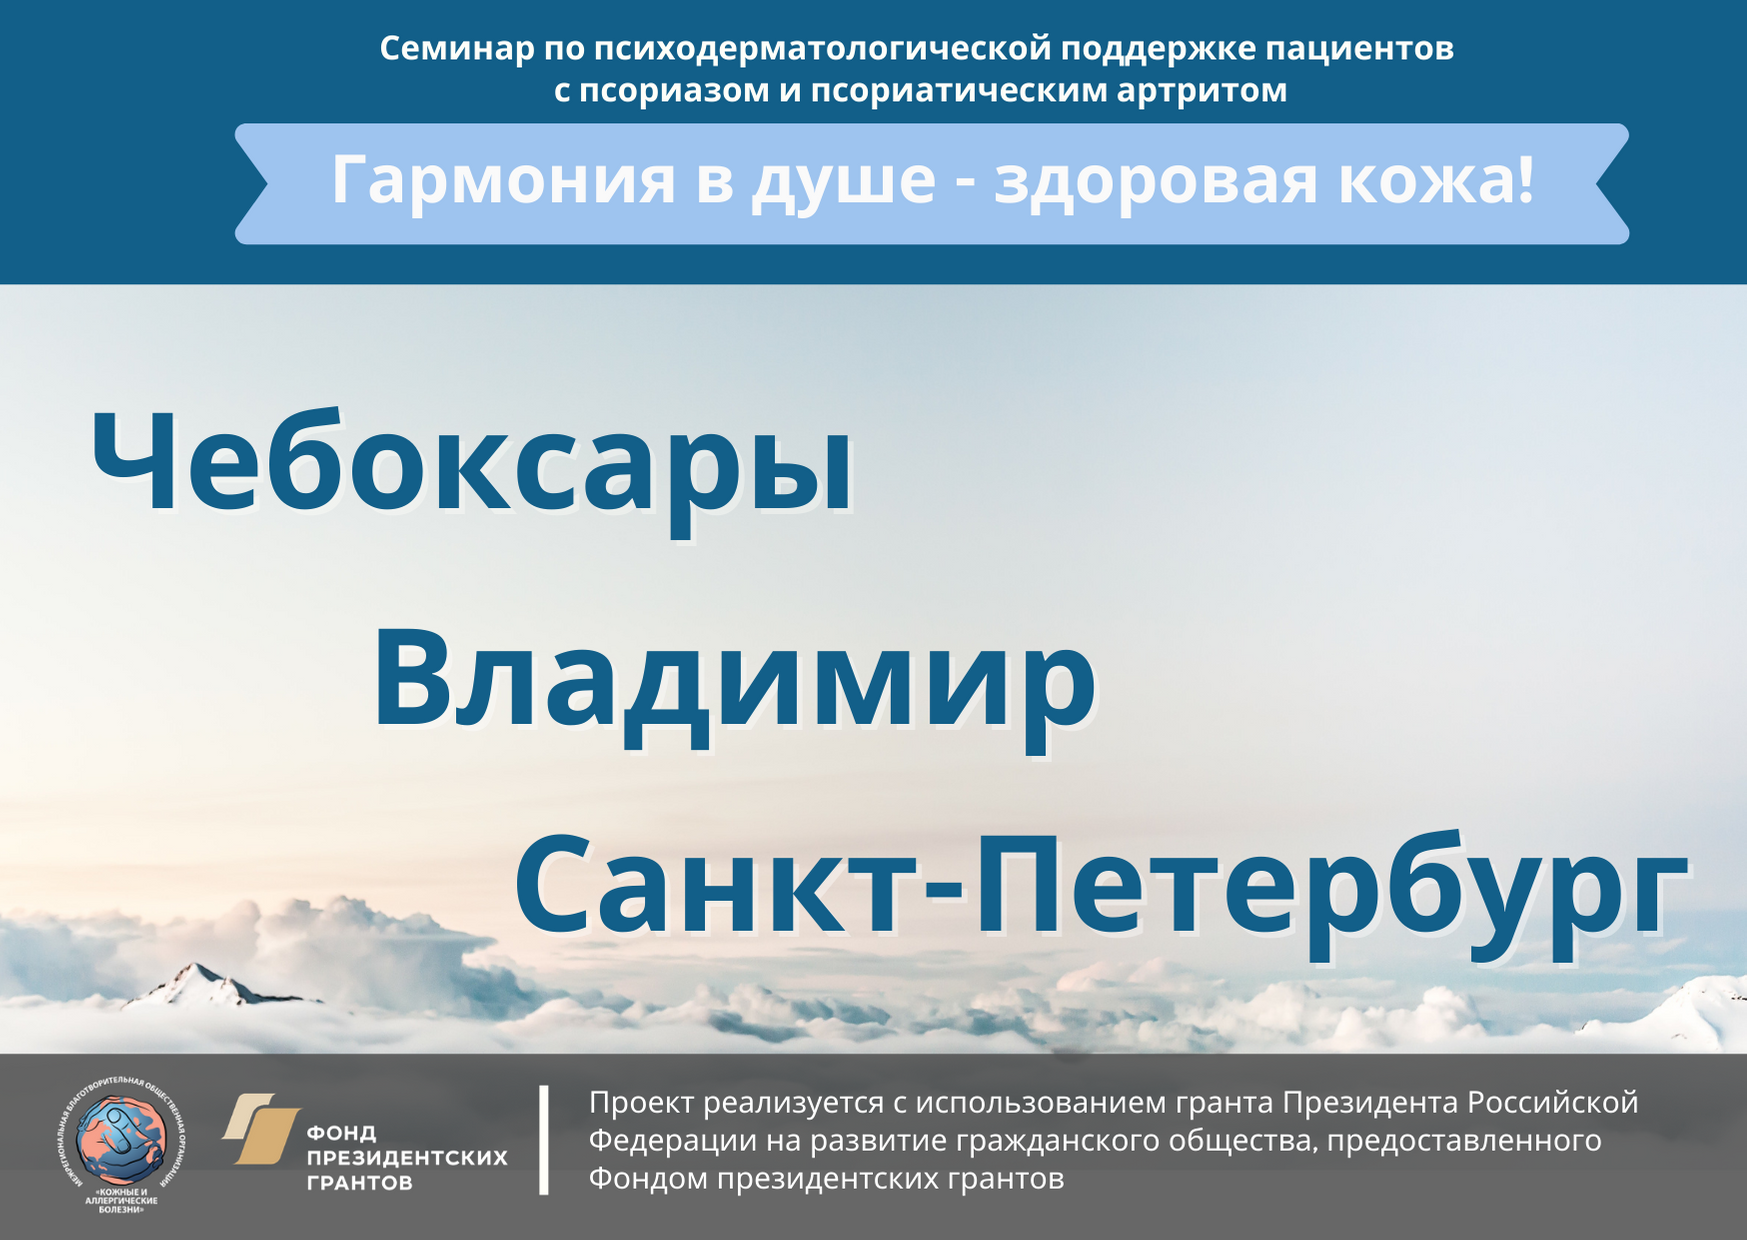 В городах России состоялись семинары для людей с псориазом